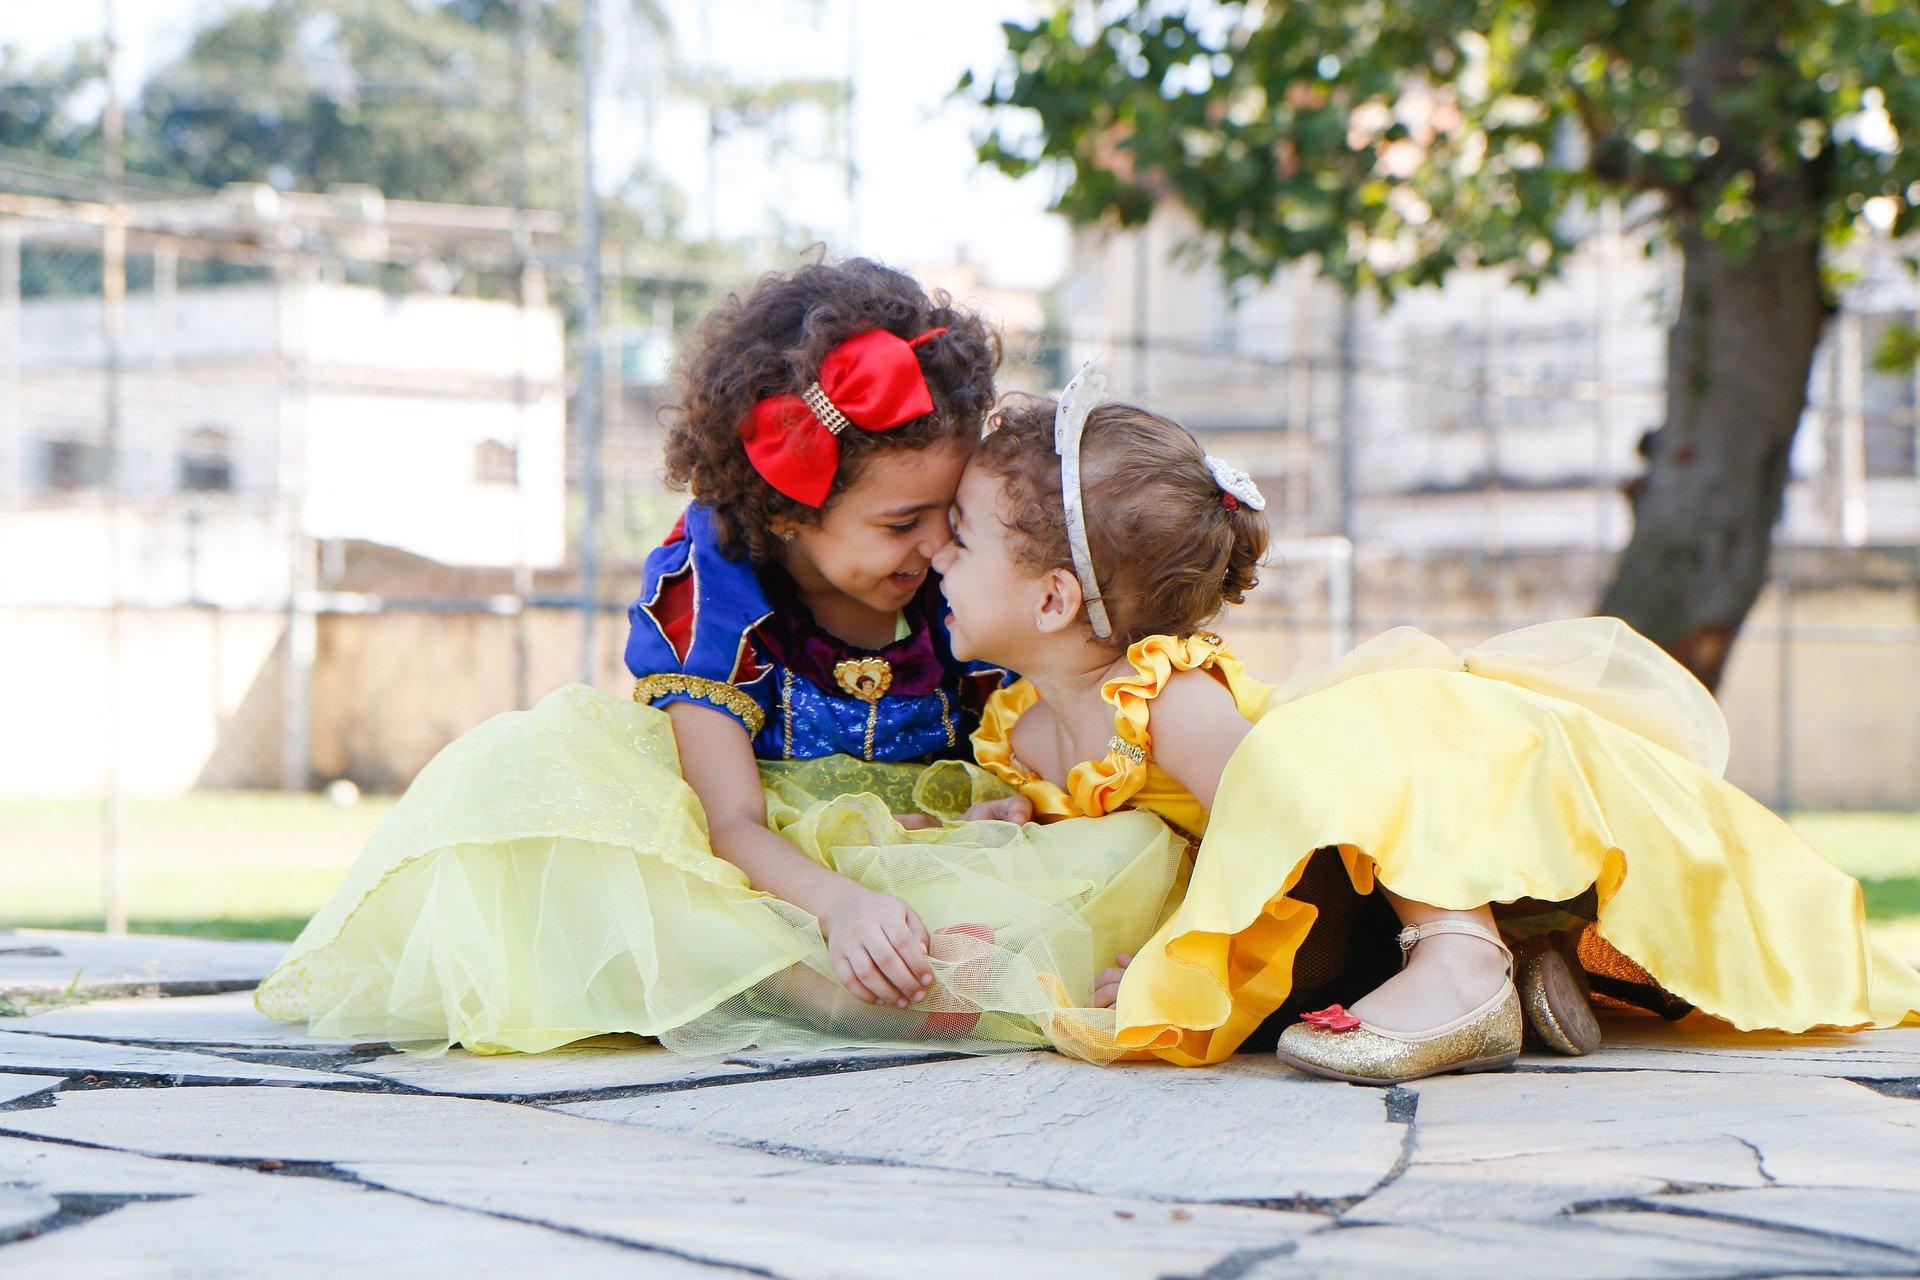 Unas niñas juegan vestidas de princesas Disney